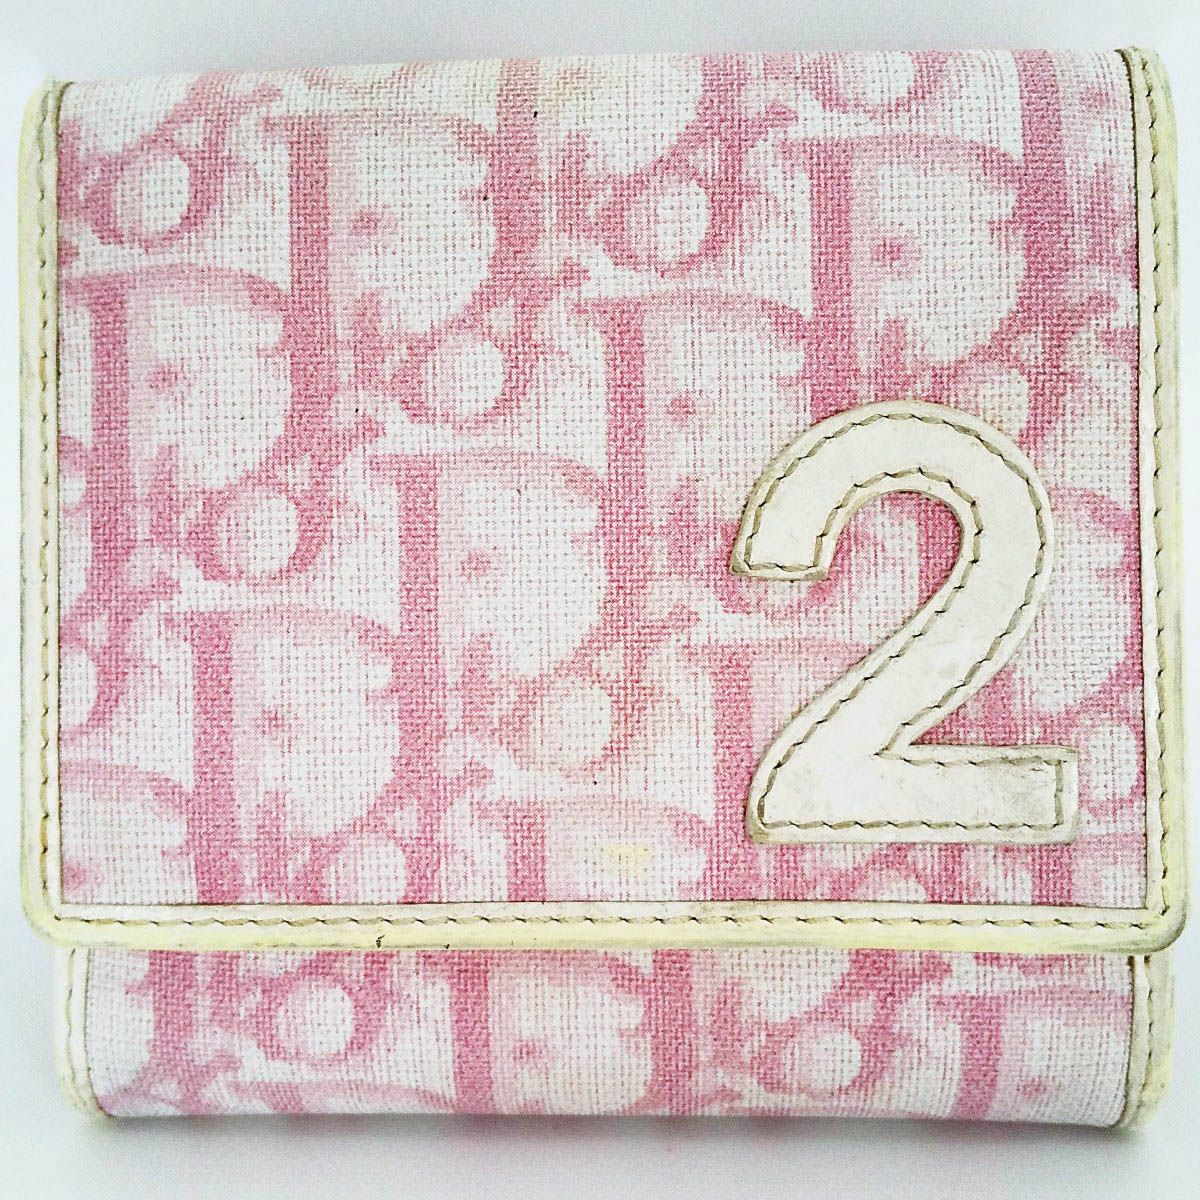 Christian Dior トロター ピンク 三つ折り財布